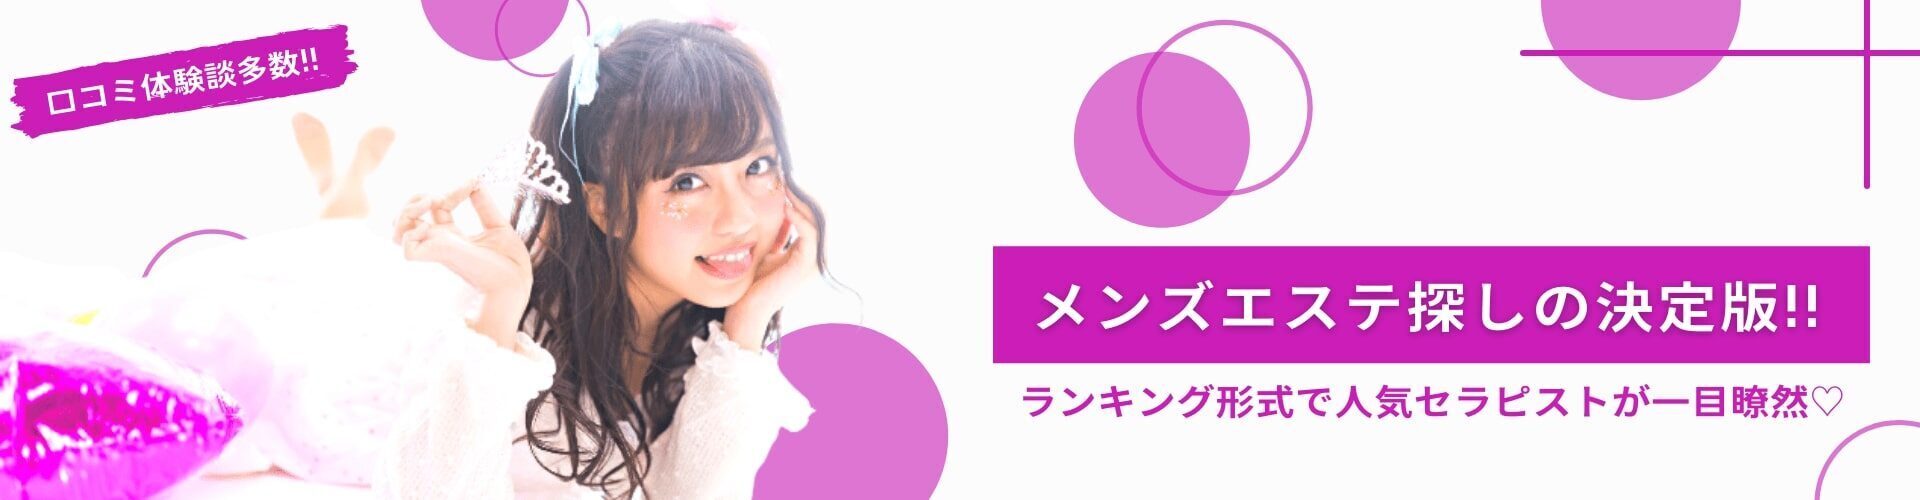 【2021年12月】大阪メンエスのスレンダー美人のセラピストを一挙公開